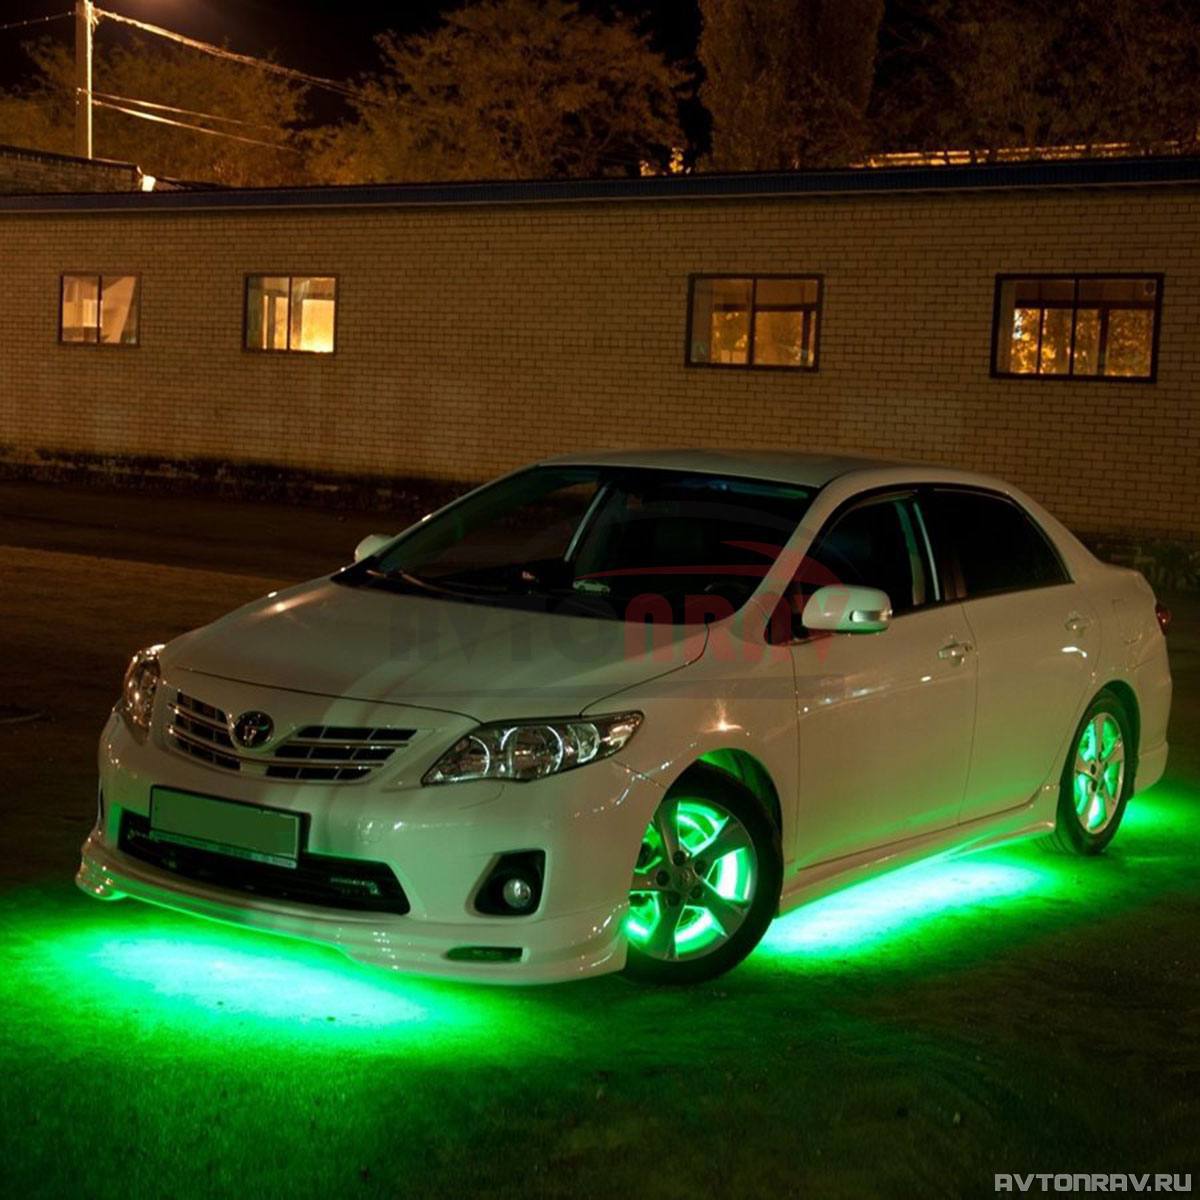 Ли подсветка. Toyota ipsum подсветка днища. Приус 30 подсветка днища. Подсветка днища Форд фокус 3.